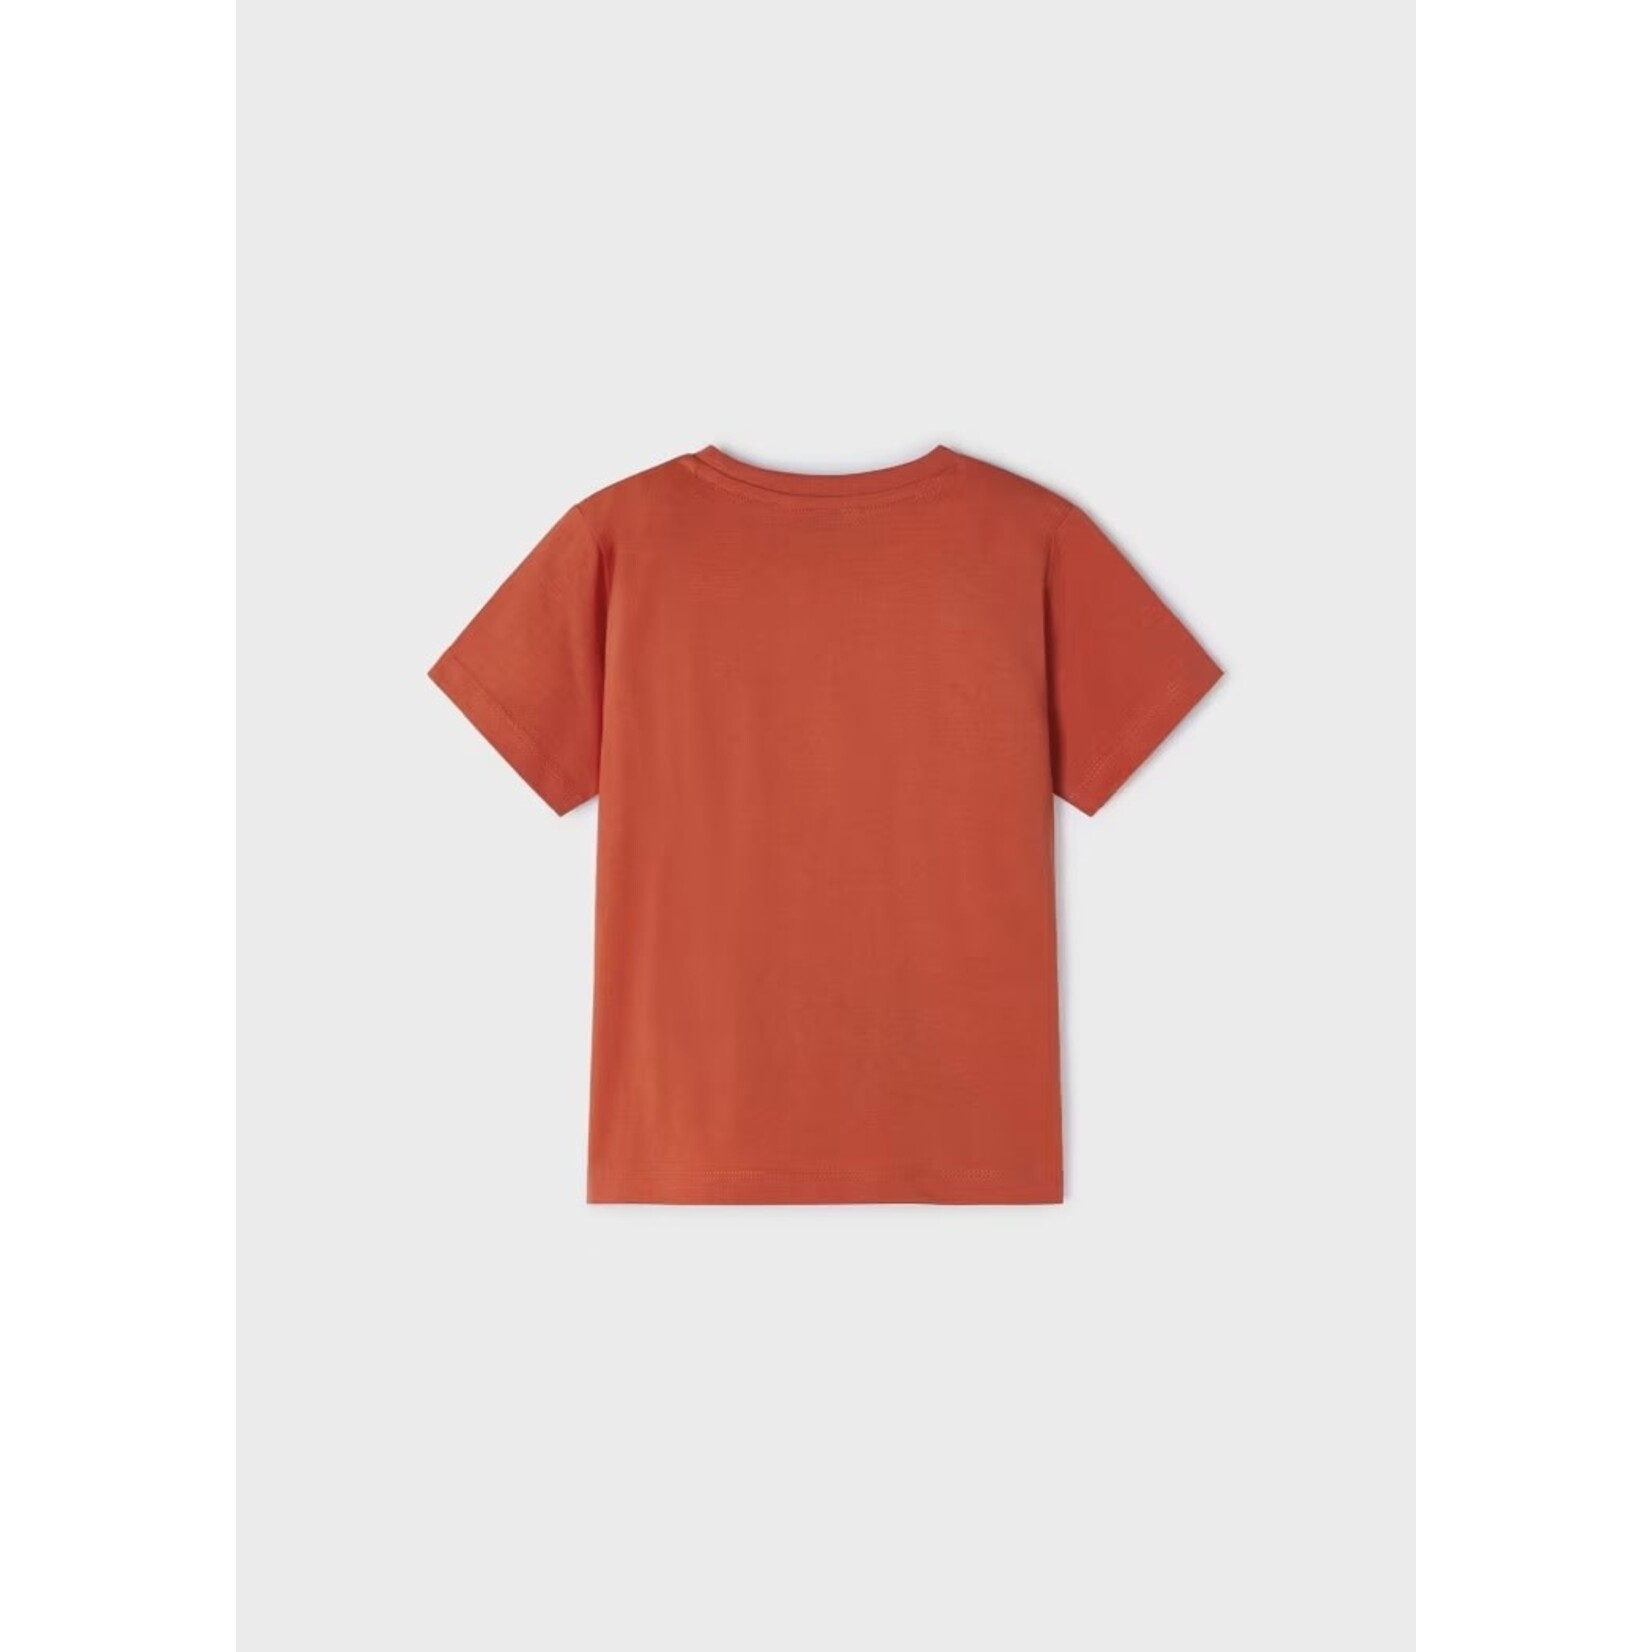 Mayoral MAYORAL - T-shirt à manches courtes rouge orangé avec imprimé de photographie d'un paysage